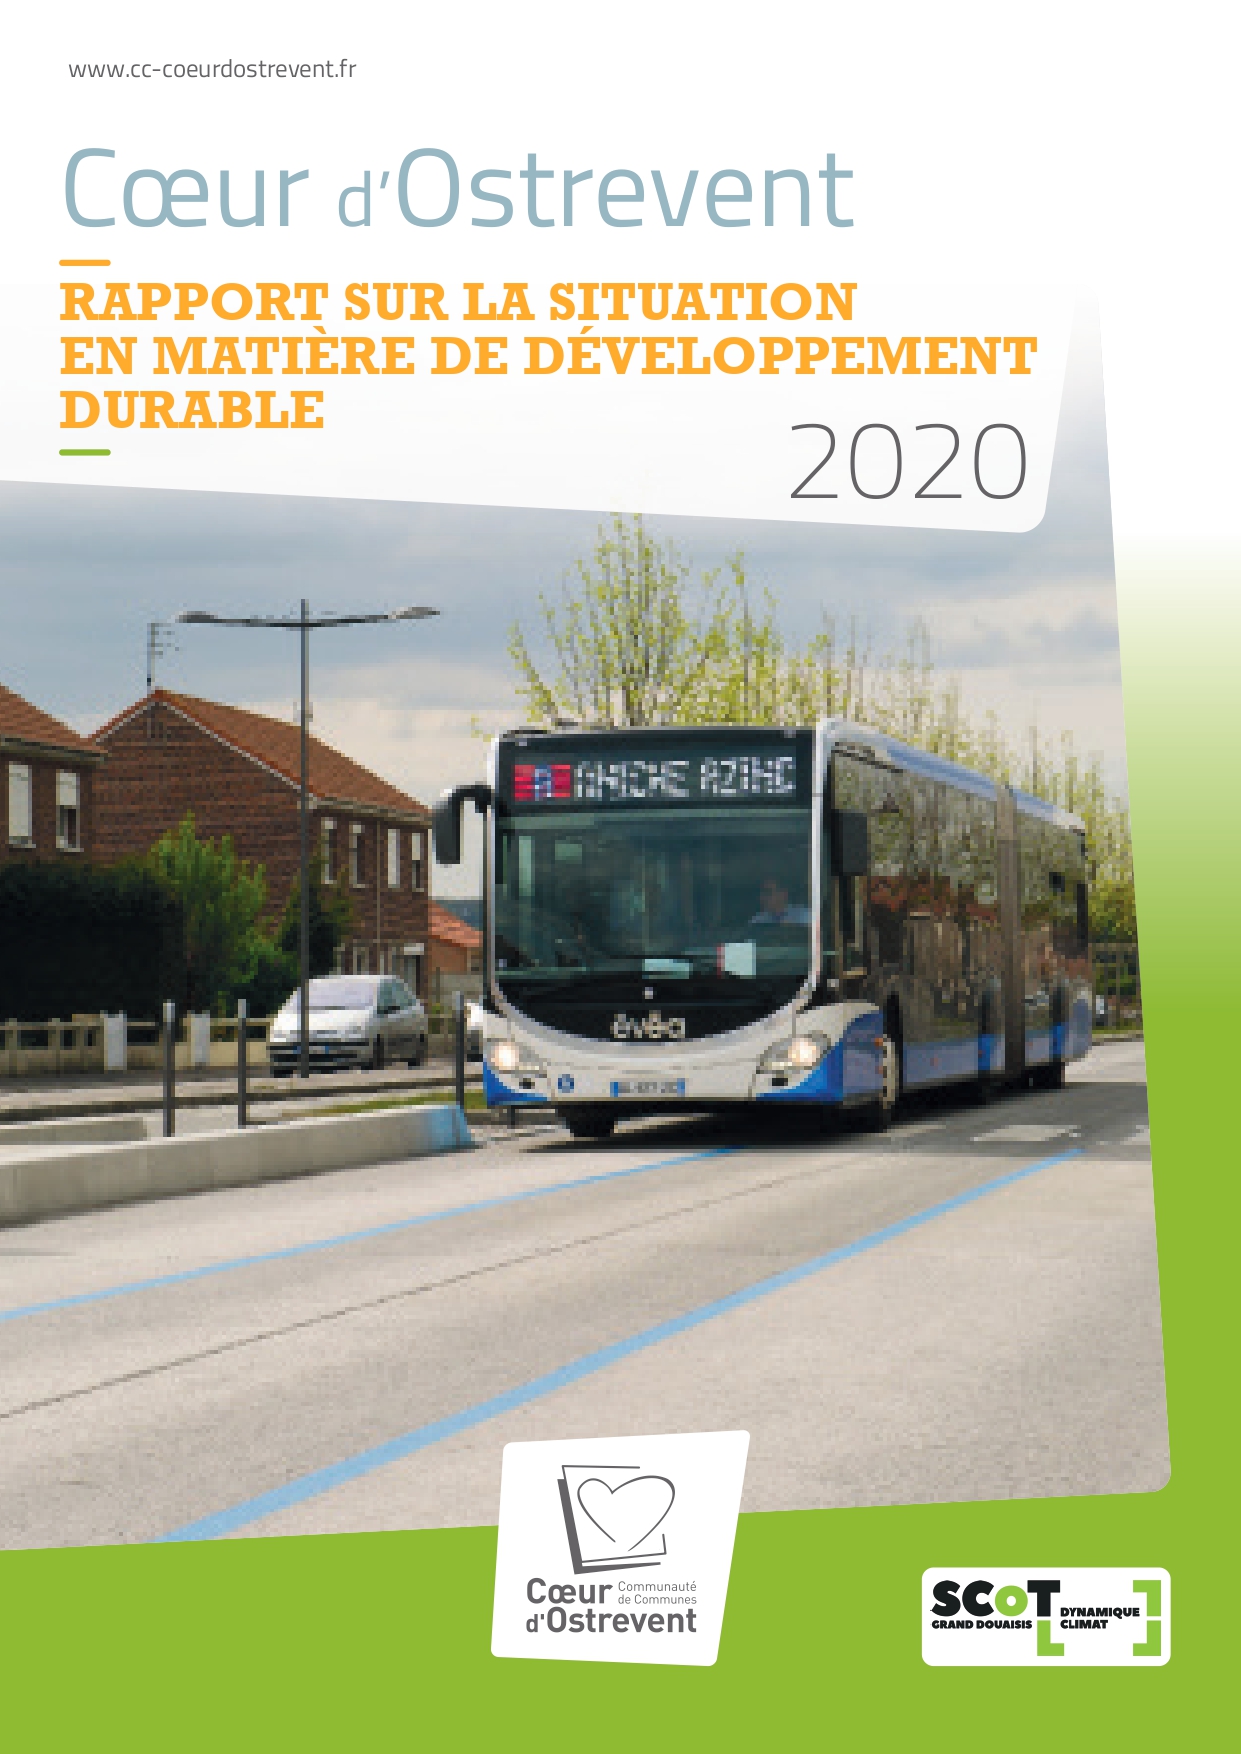 Première de couverture du Rapport de Développement Durable 2020 de Cœur d'Ostrevent